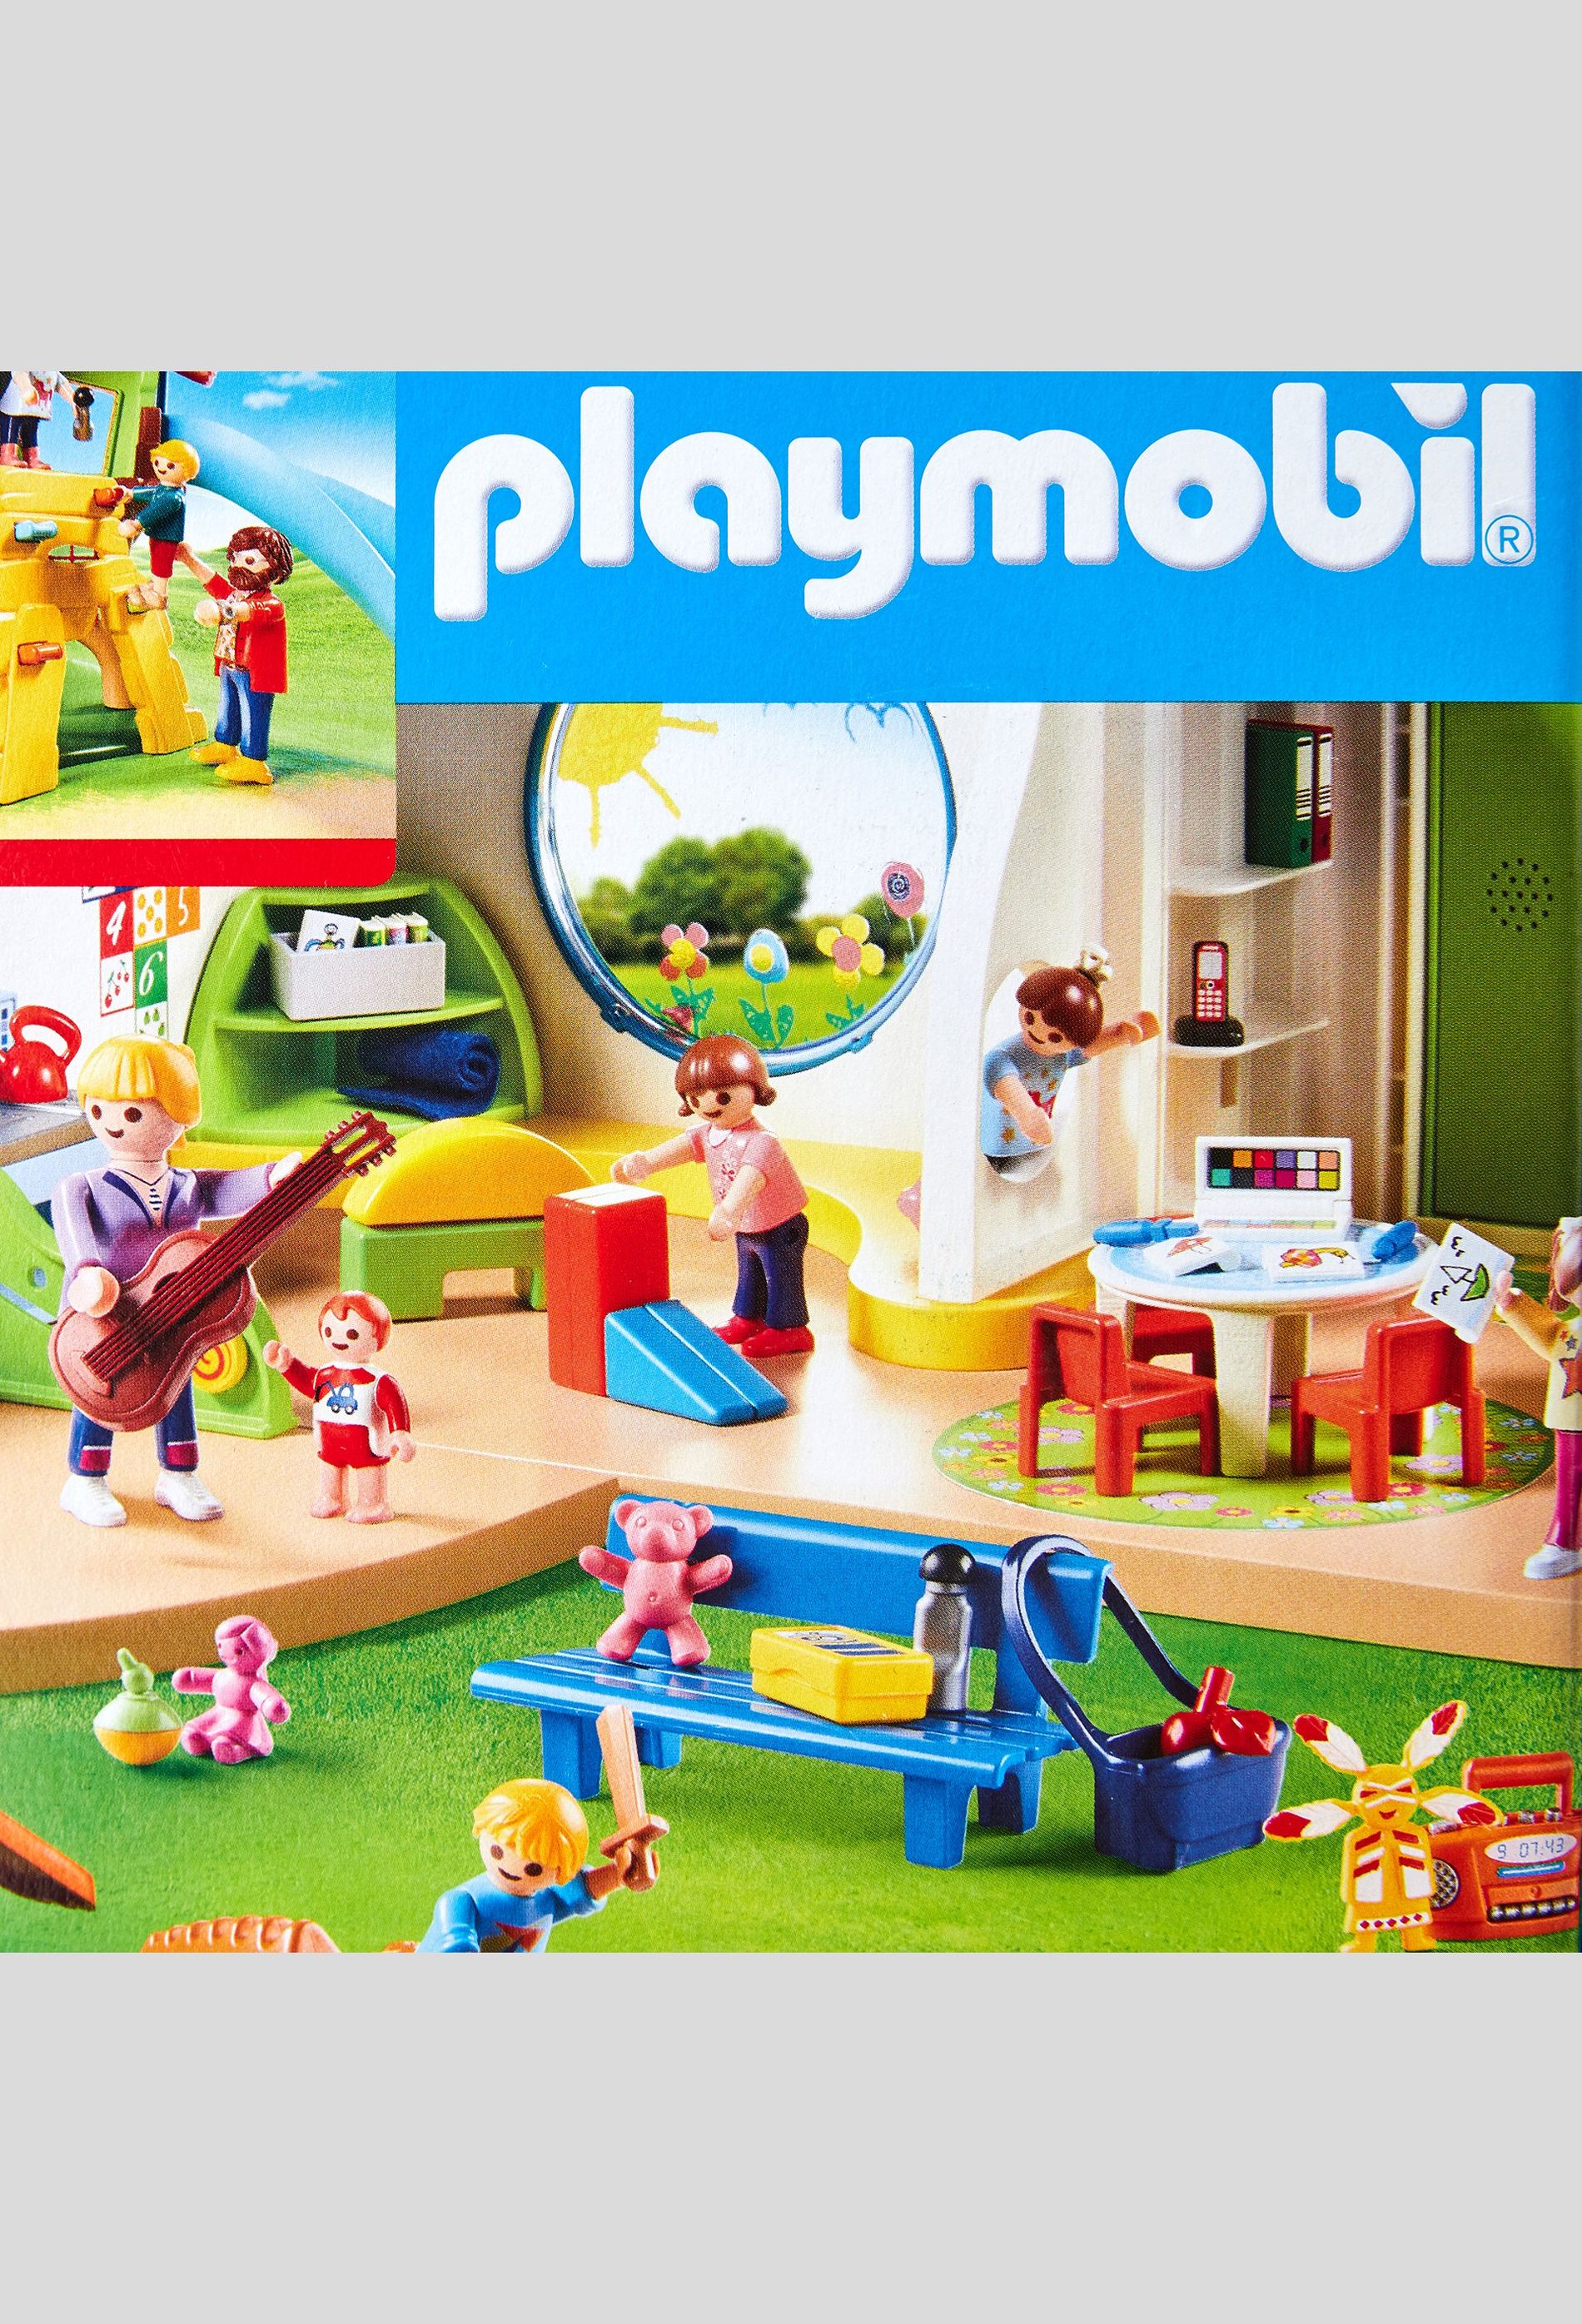 PLAYMOBIL - 70281 - Parc de jeux et enfants - City Life